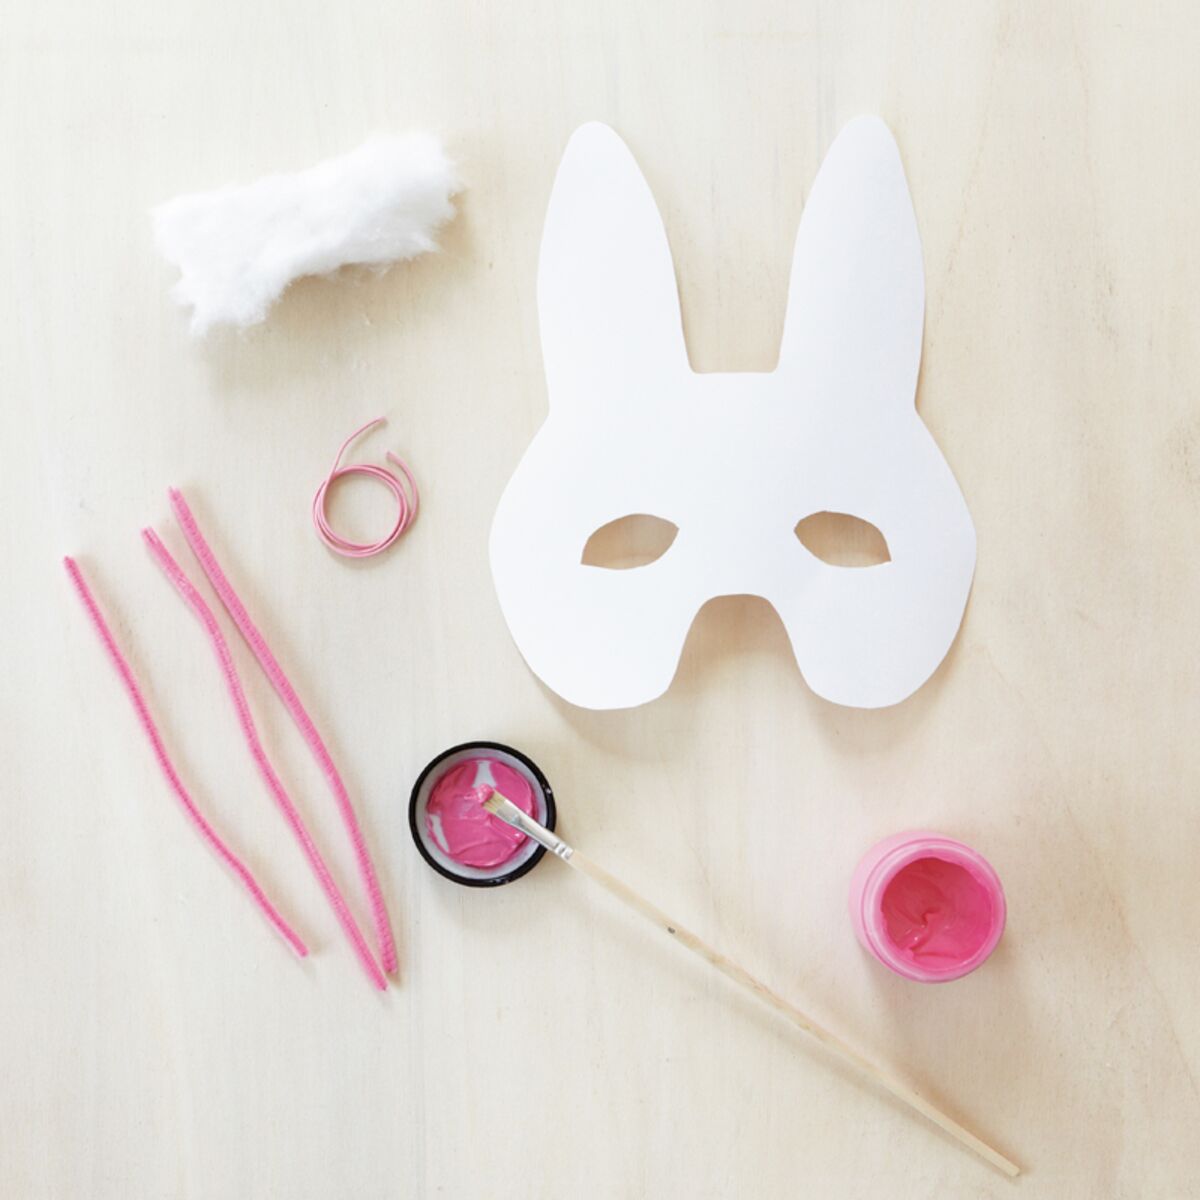 DIY déguisement : réaliser un masque en carton - Marie Claire